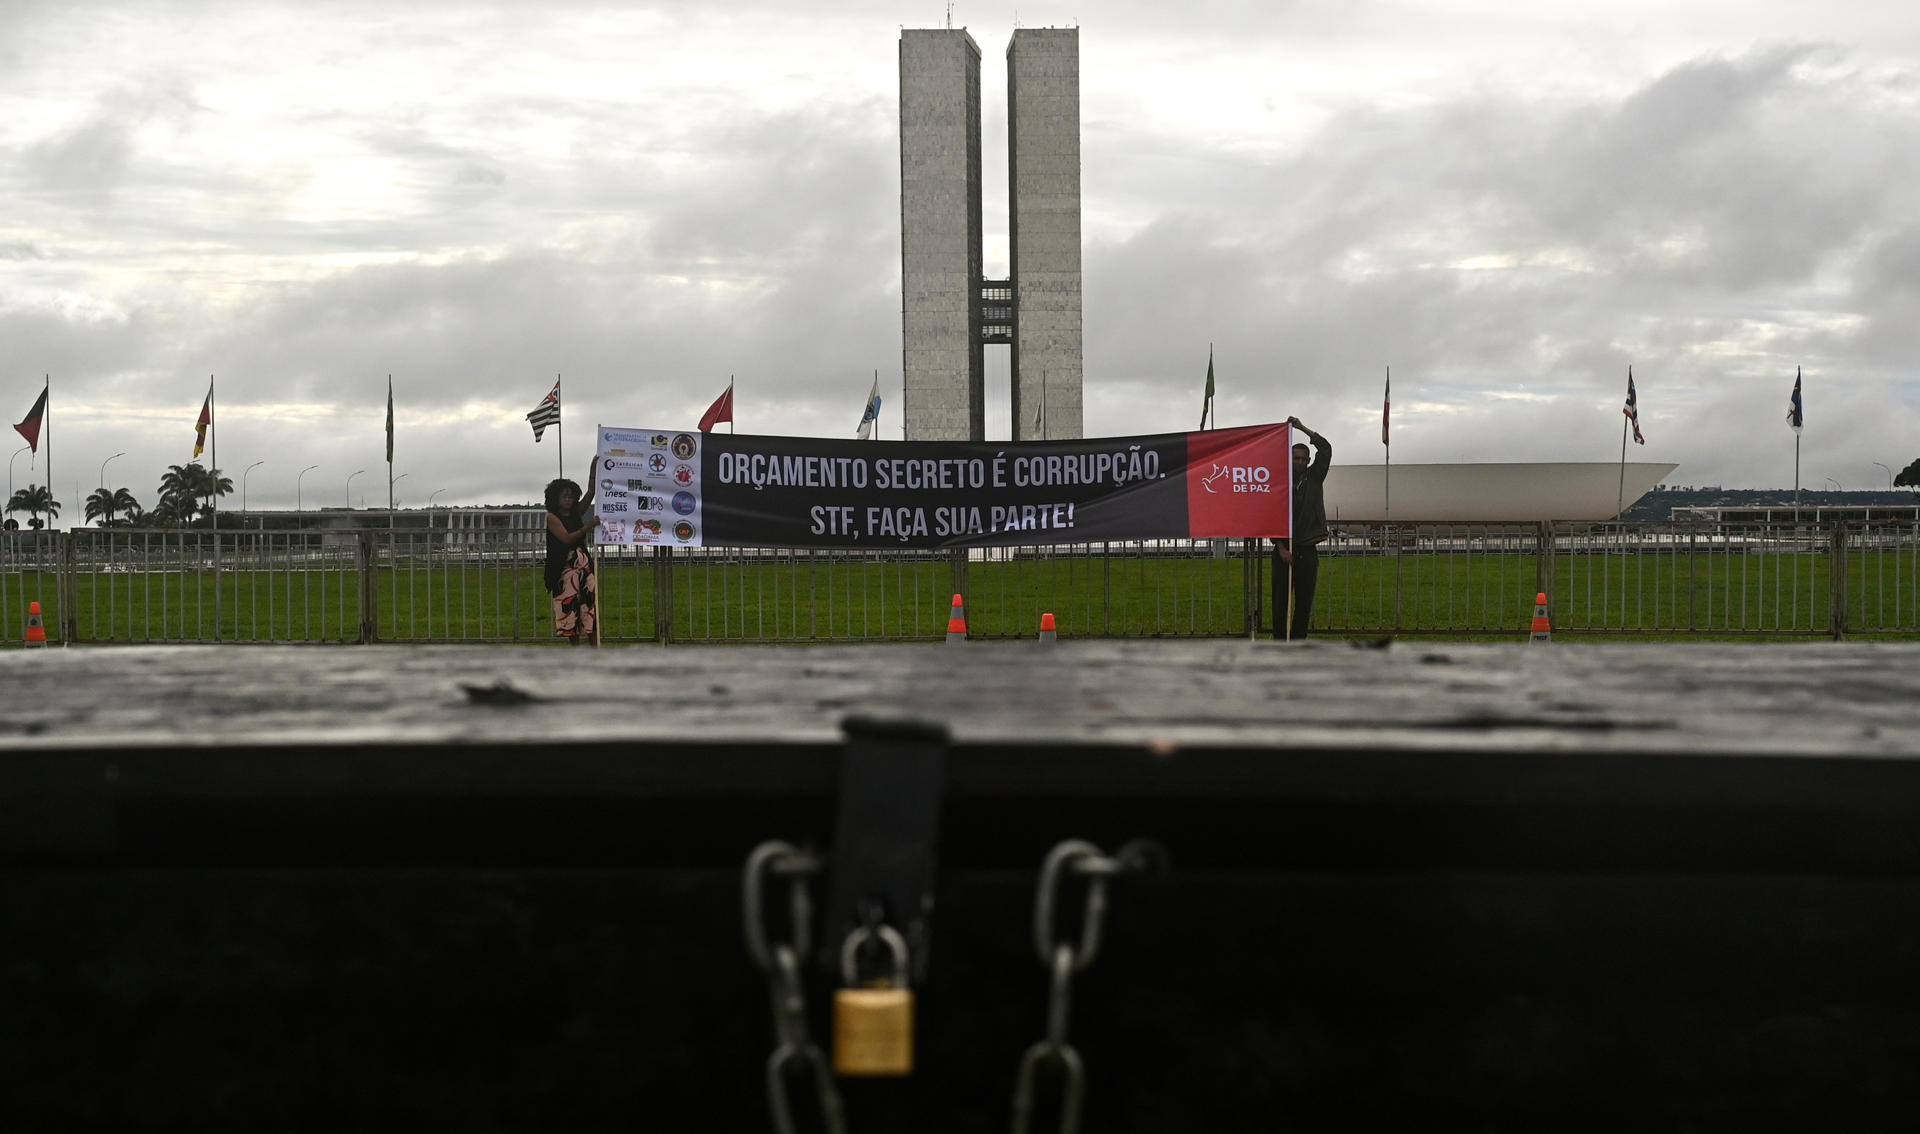 Integrantes de la ONG Río de Paz fueron registrados este martes, 6 de diciembre, al sostener un cartel que dice "El presupuesto secreto es corrupción, Supremo Tribunal Federal (STF) haz tu parte!" durante una protesta contra la corrupción, en Brasília (Brasil). EFE/Andre Borges
